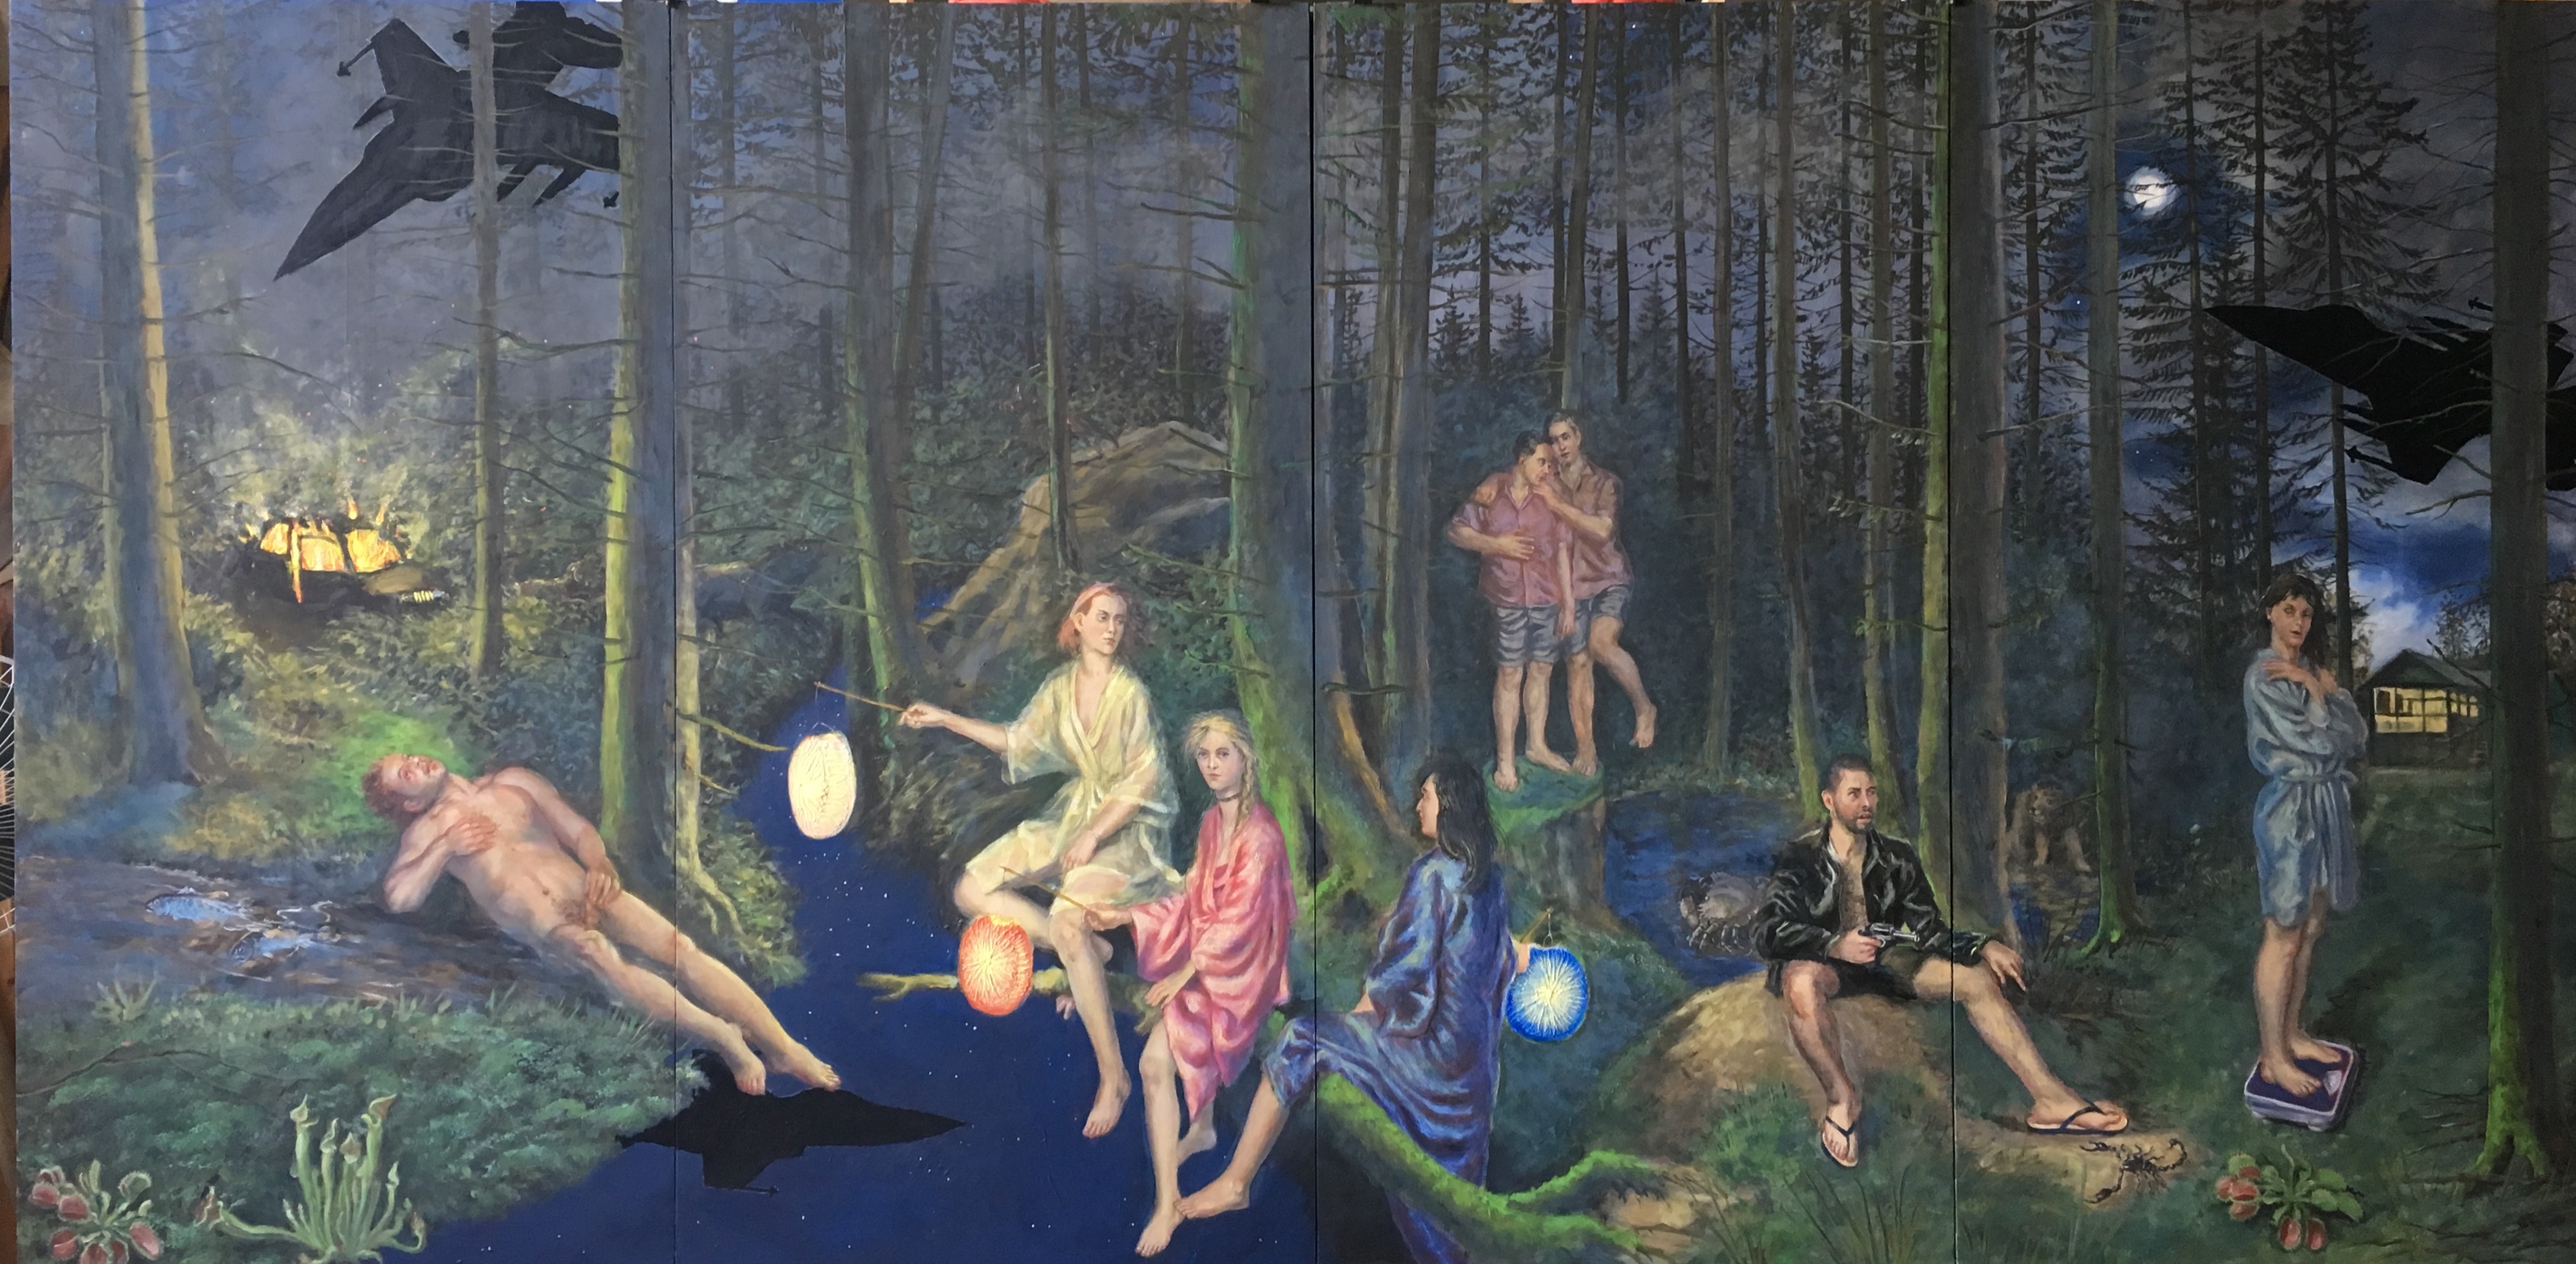 Nacht, erste Öffnung, 2019, mixed media auf Holz, 140 x 280 cm